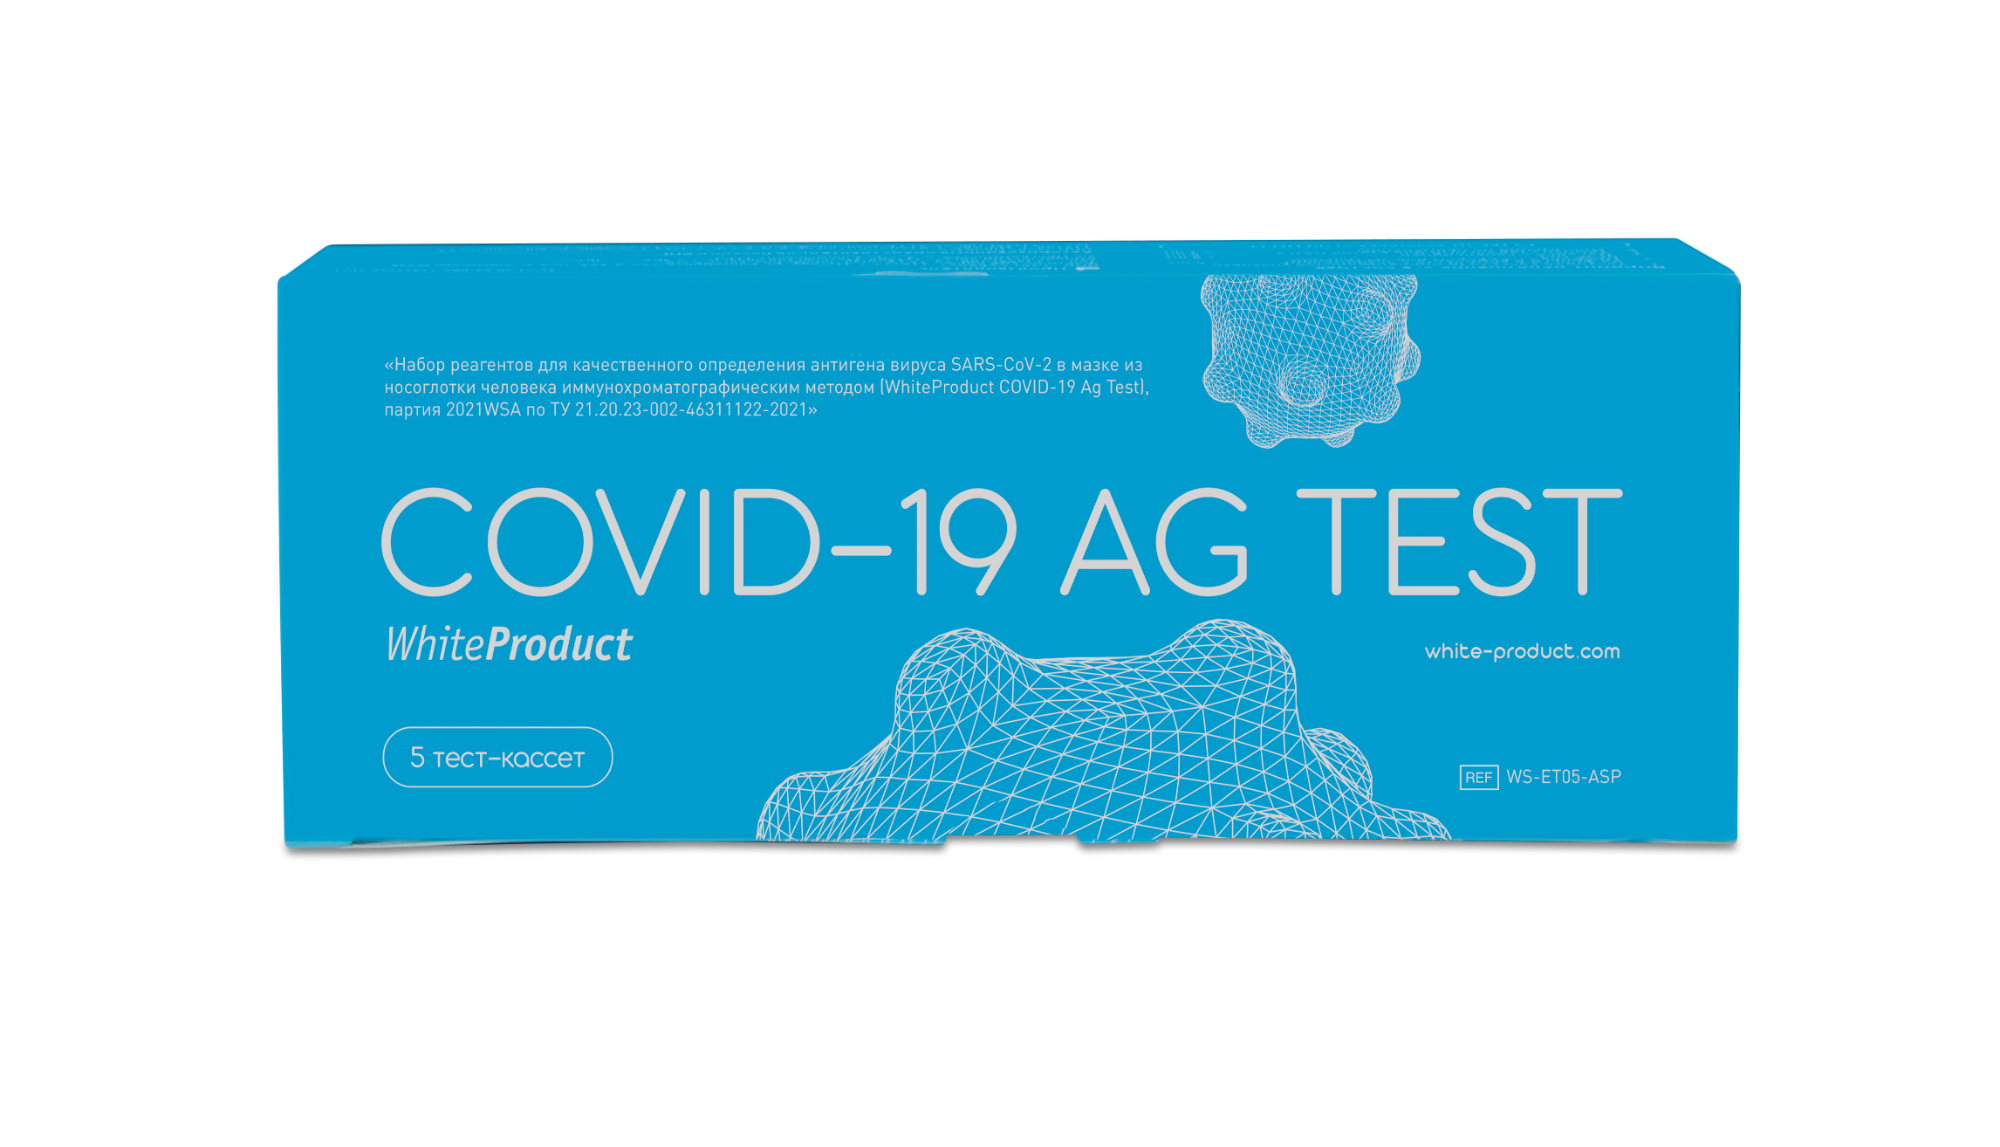 Тест WHITEPRODUCT Covid-19 AG ИХА. Covid-19 AG Test White product. White product тест на Covid. ЭКТЕСТ Covid-19 AG ИХА, WHITEPRODUCT.